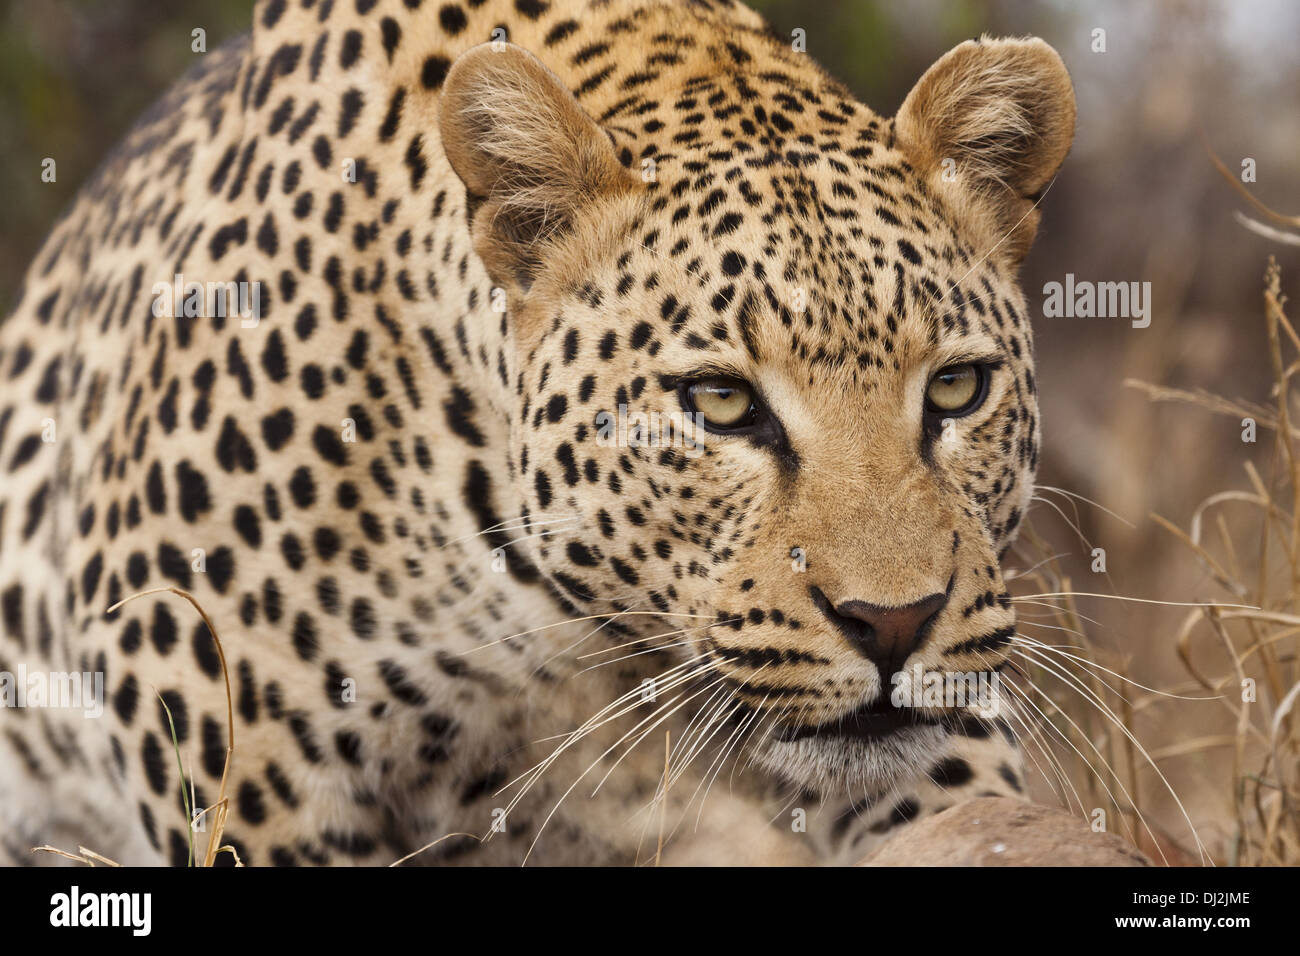 Leopard (Panthera pardus) in portrait Stock Photo